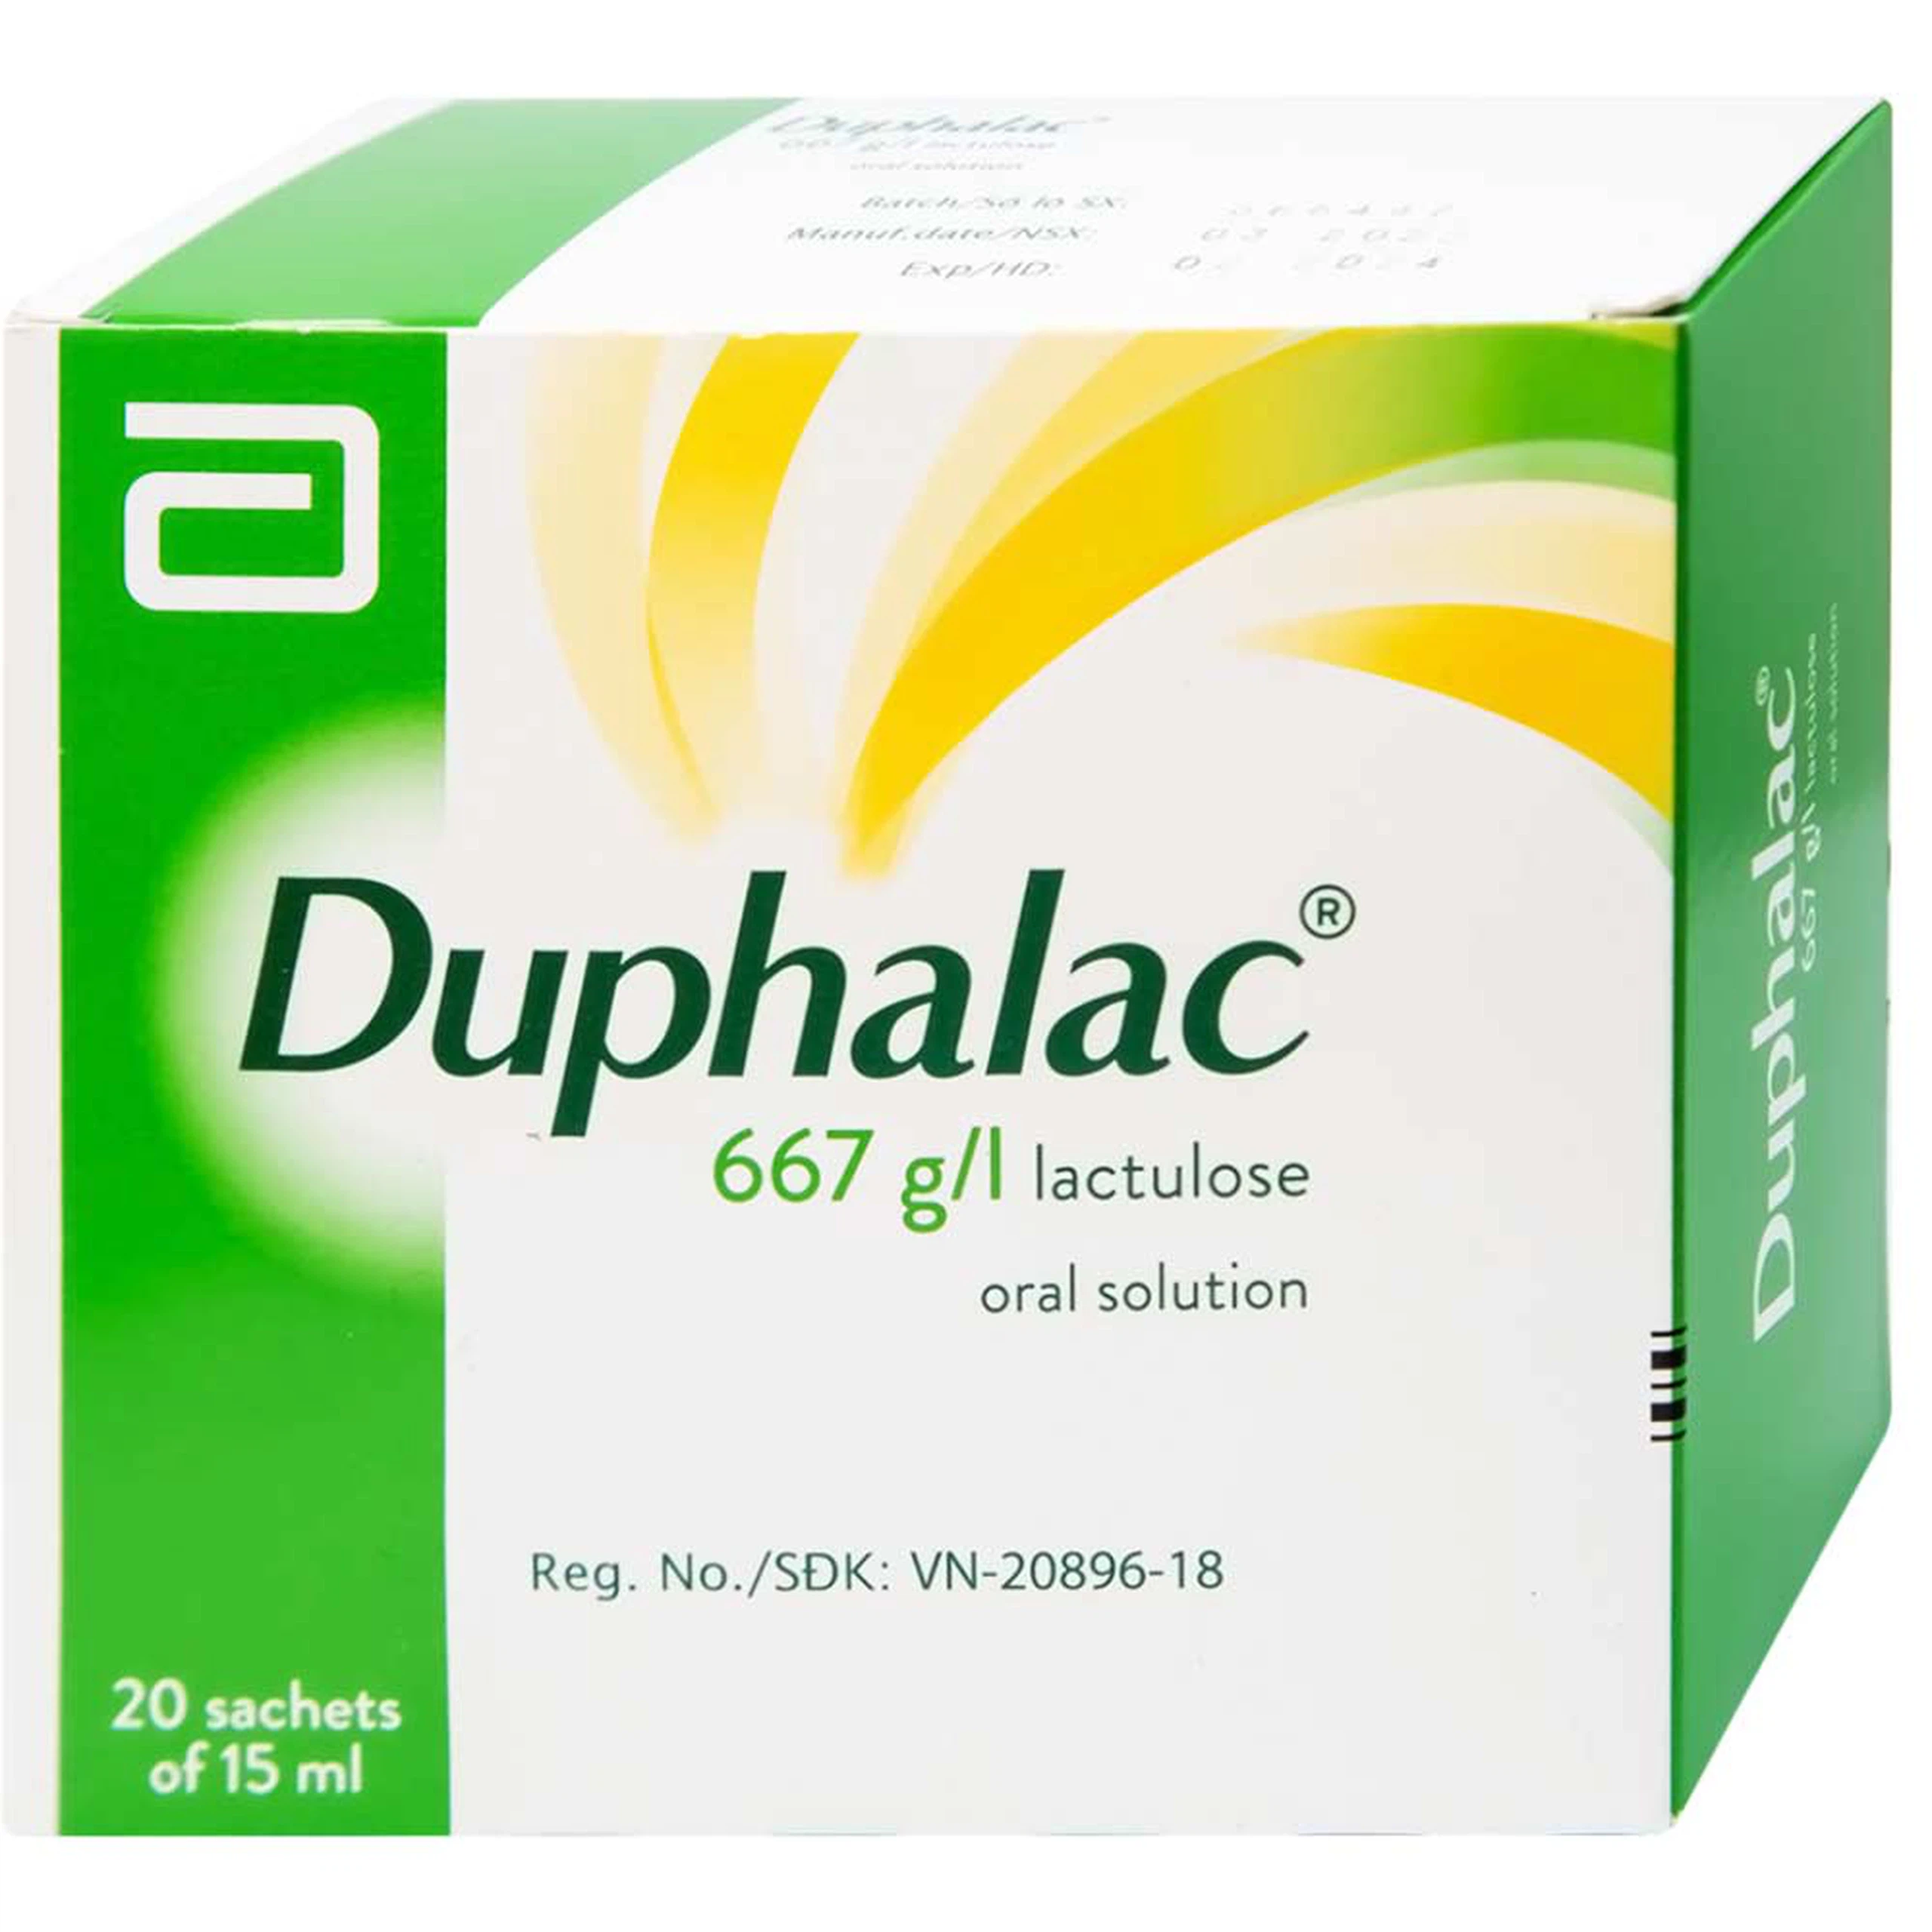 Duphalac (Lactulose) điều trị táo bón hiệu quả và tăng cường lợi khuẩn ruột (20 gói x 15ml)